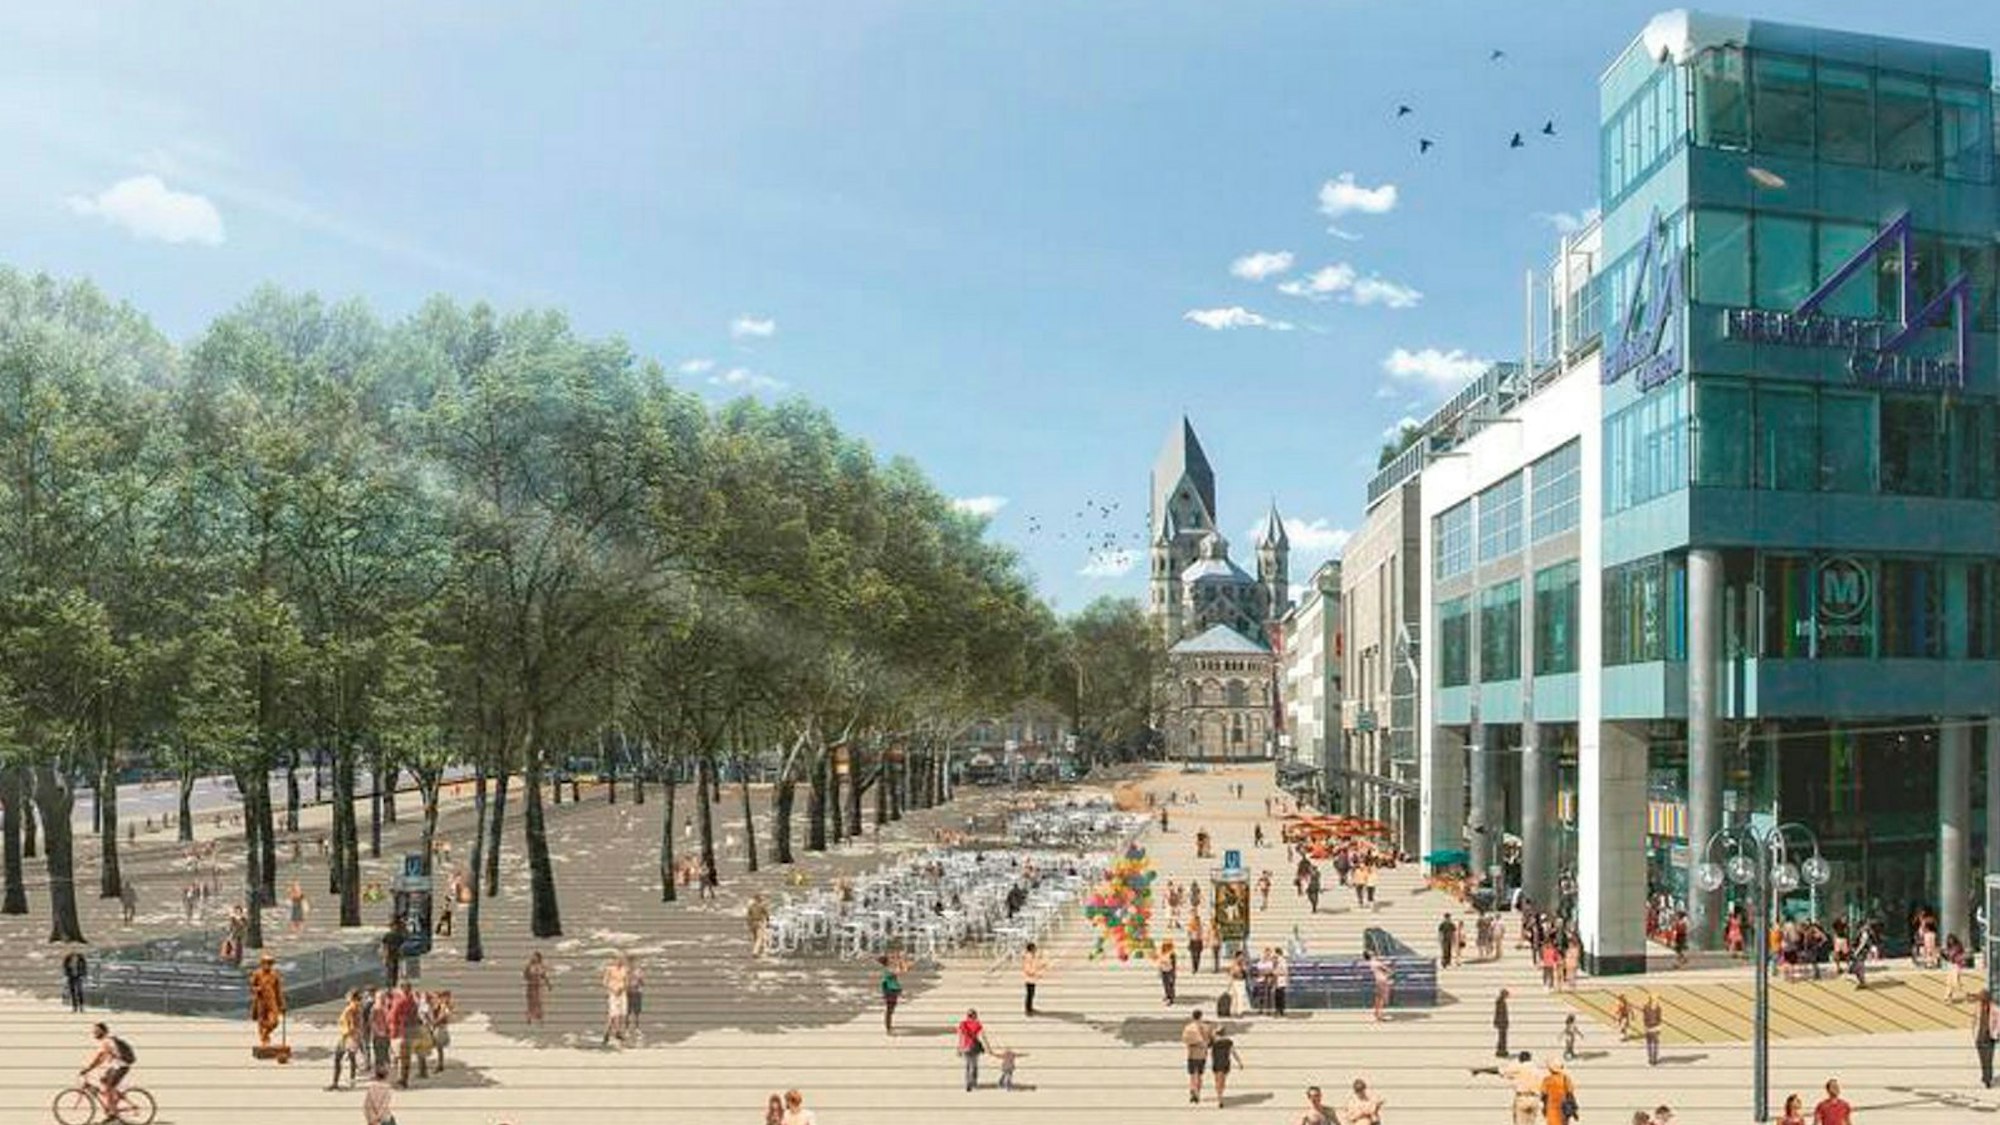 Eine Visualisierung zeigt die Nordseite des Neumarkts, die zu einer großen Fußgängerzone umgewandelt ist, mit Gastronomie und breiten Gehwegen.